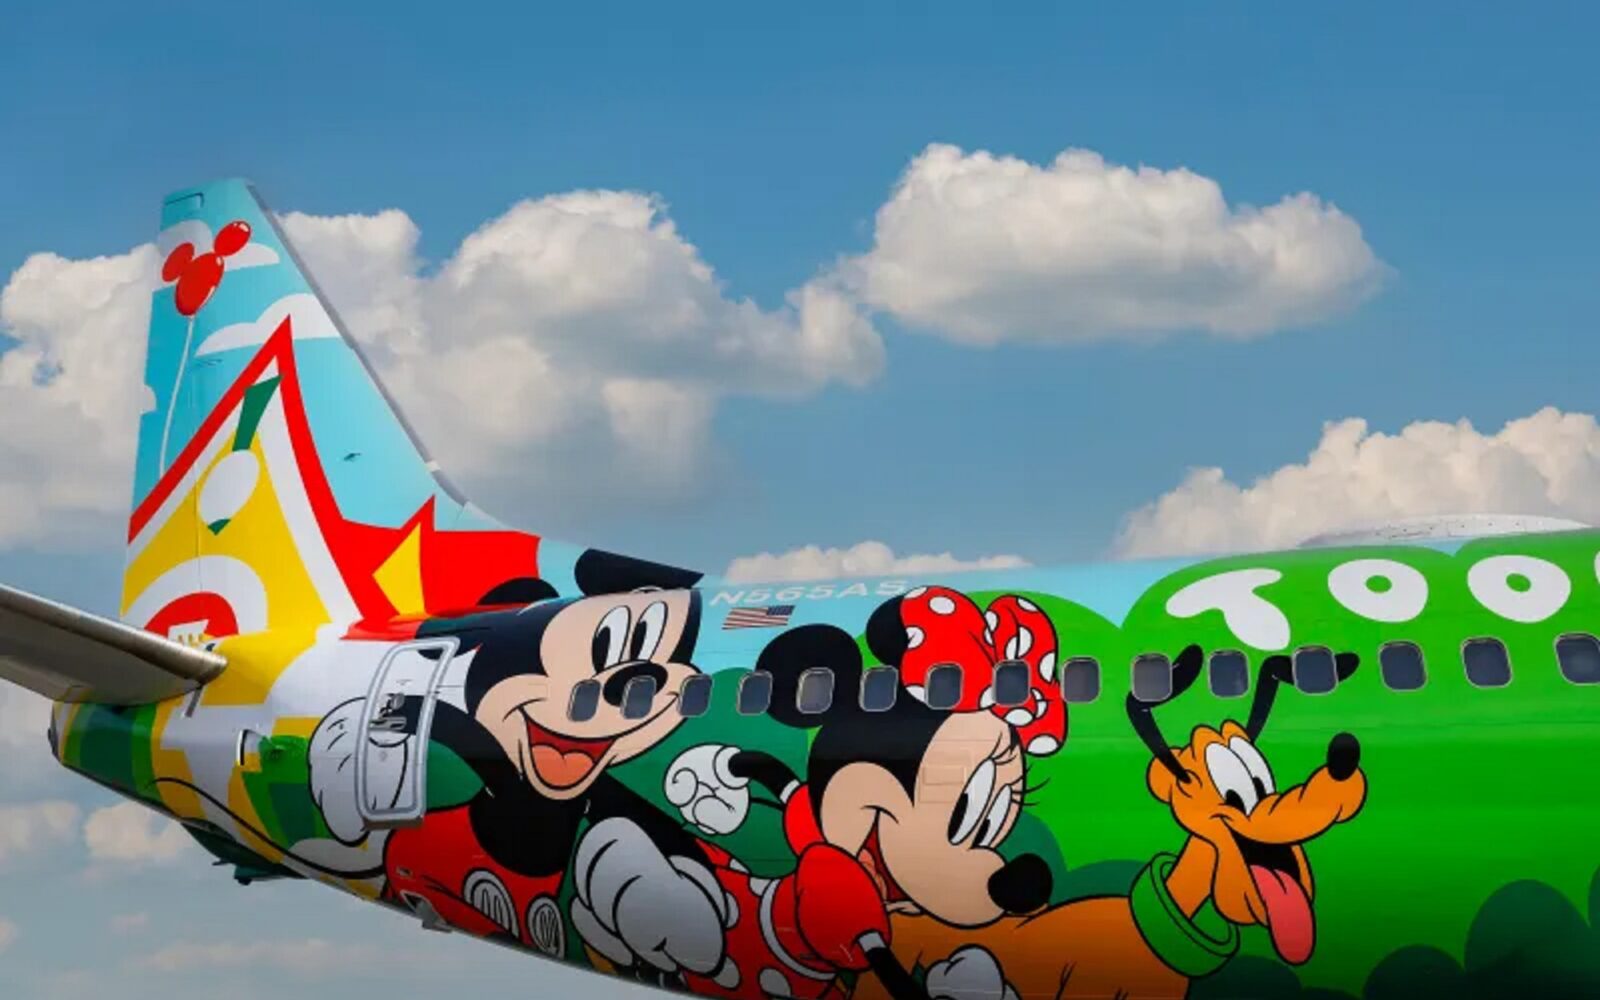 Alaska Airlines wprowadza na rynek nowy, ręcznie malowany samolot 737 inspirowany Myszką Miki